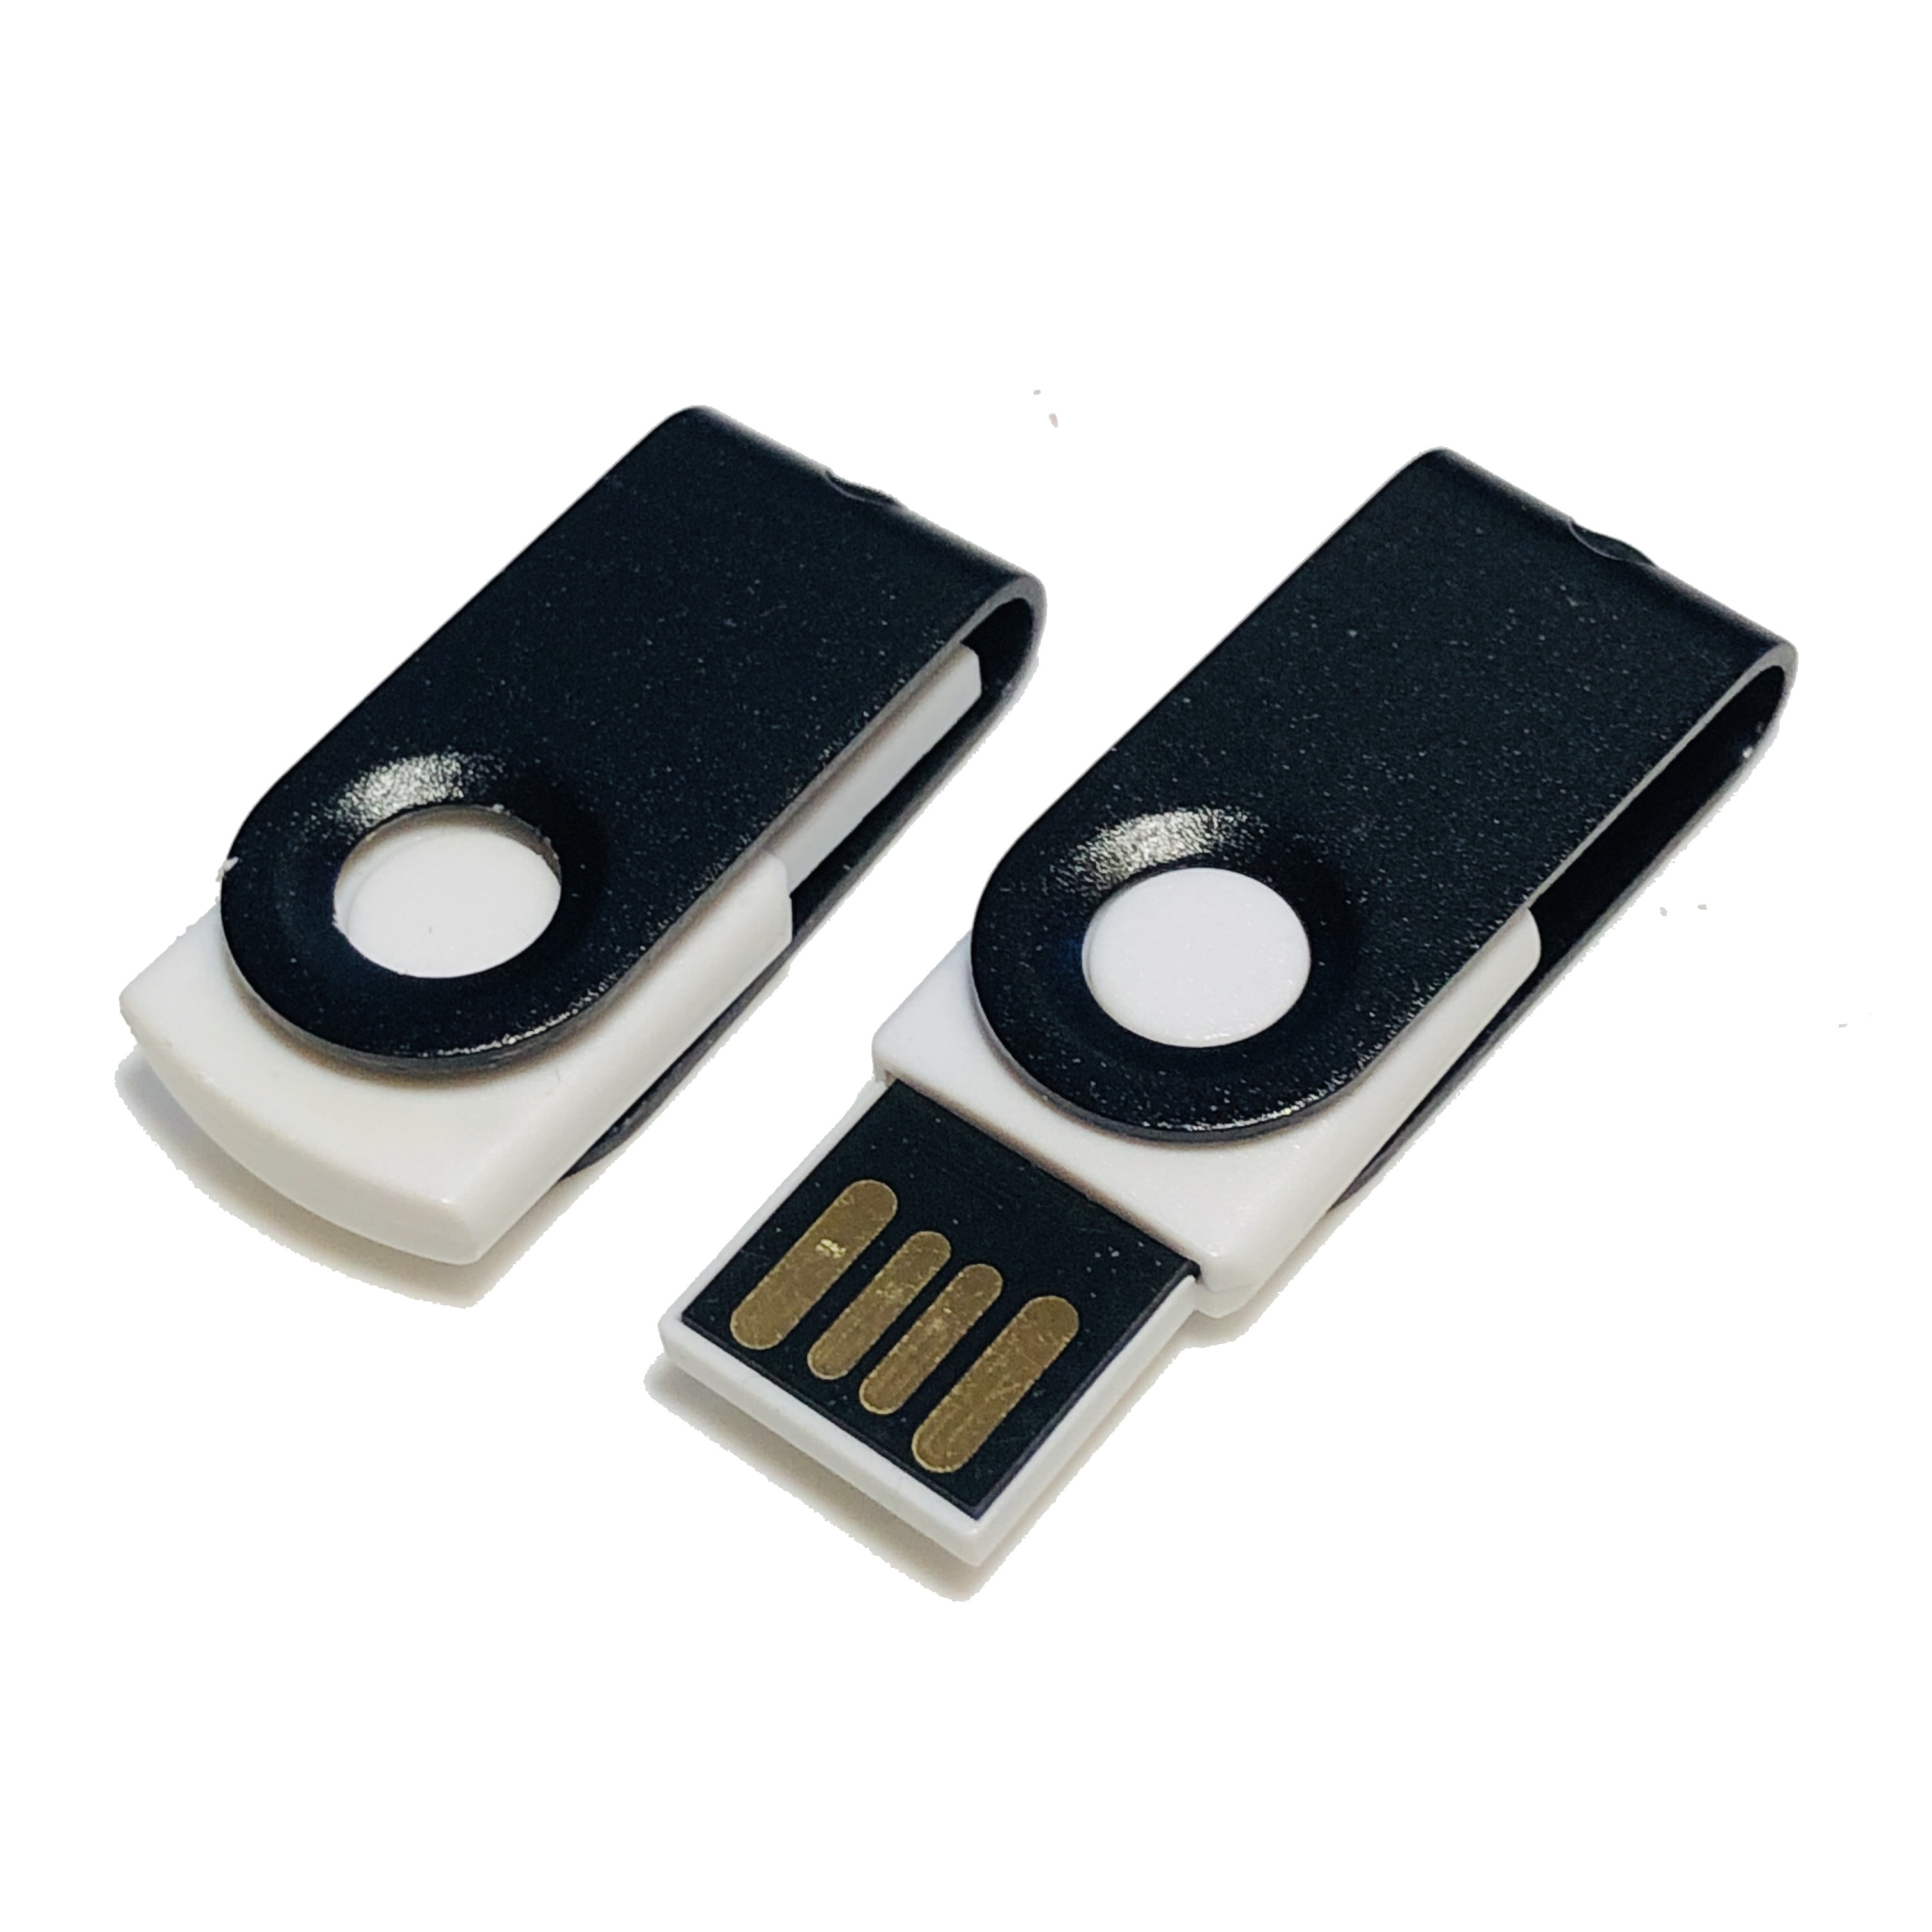 1 MINI-SWIVEL USB USB-Stick GB) (Weiß-Schwarz, ® GERMANY